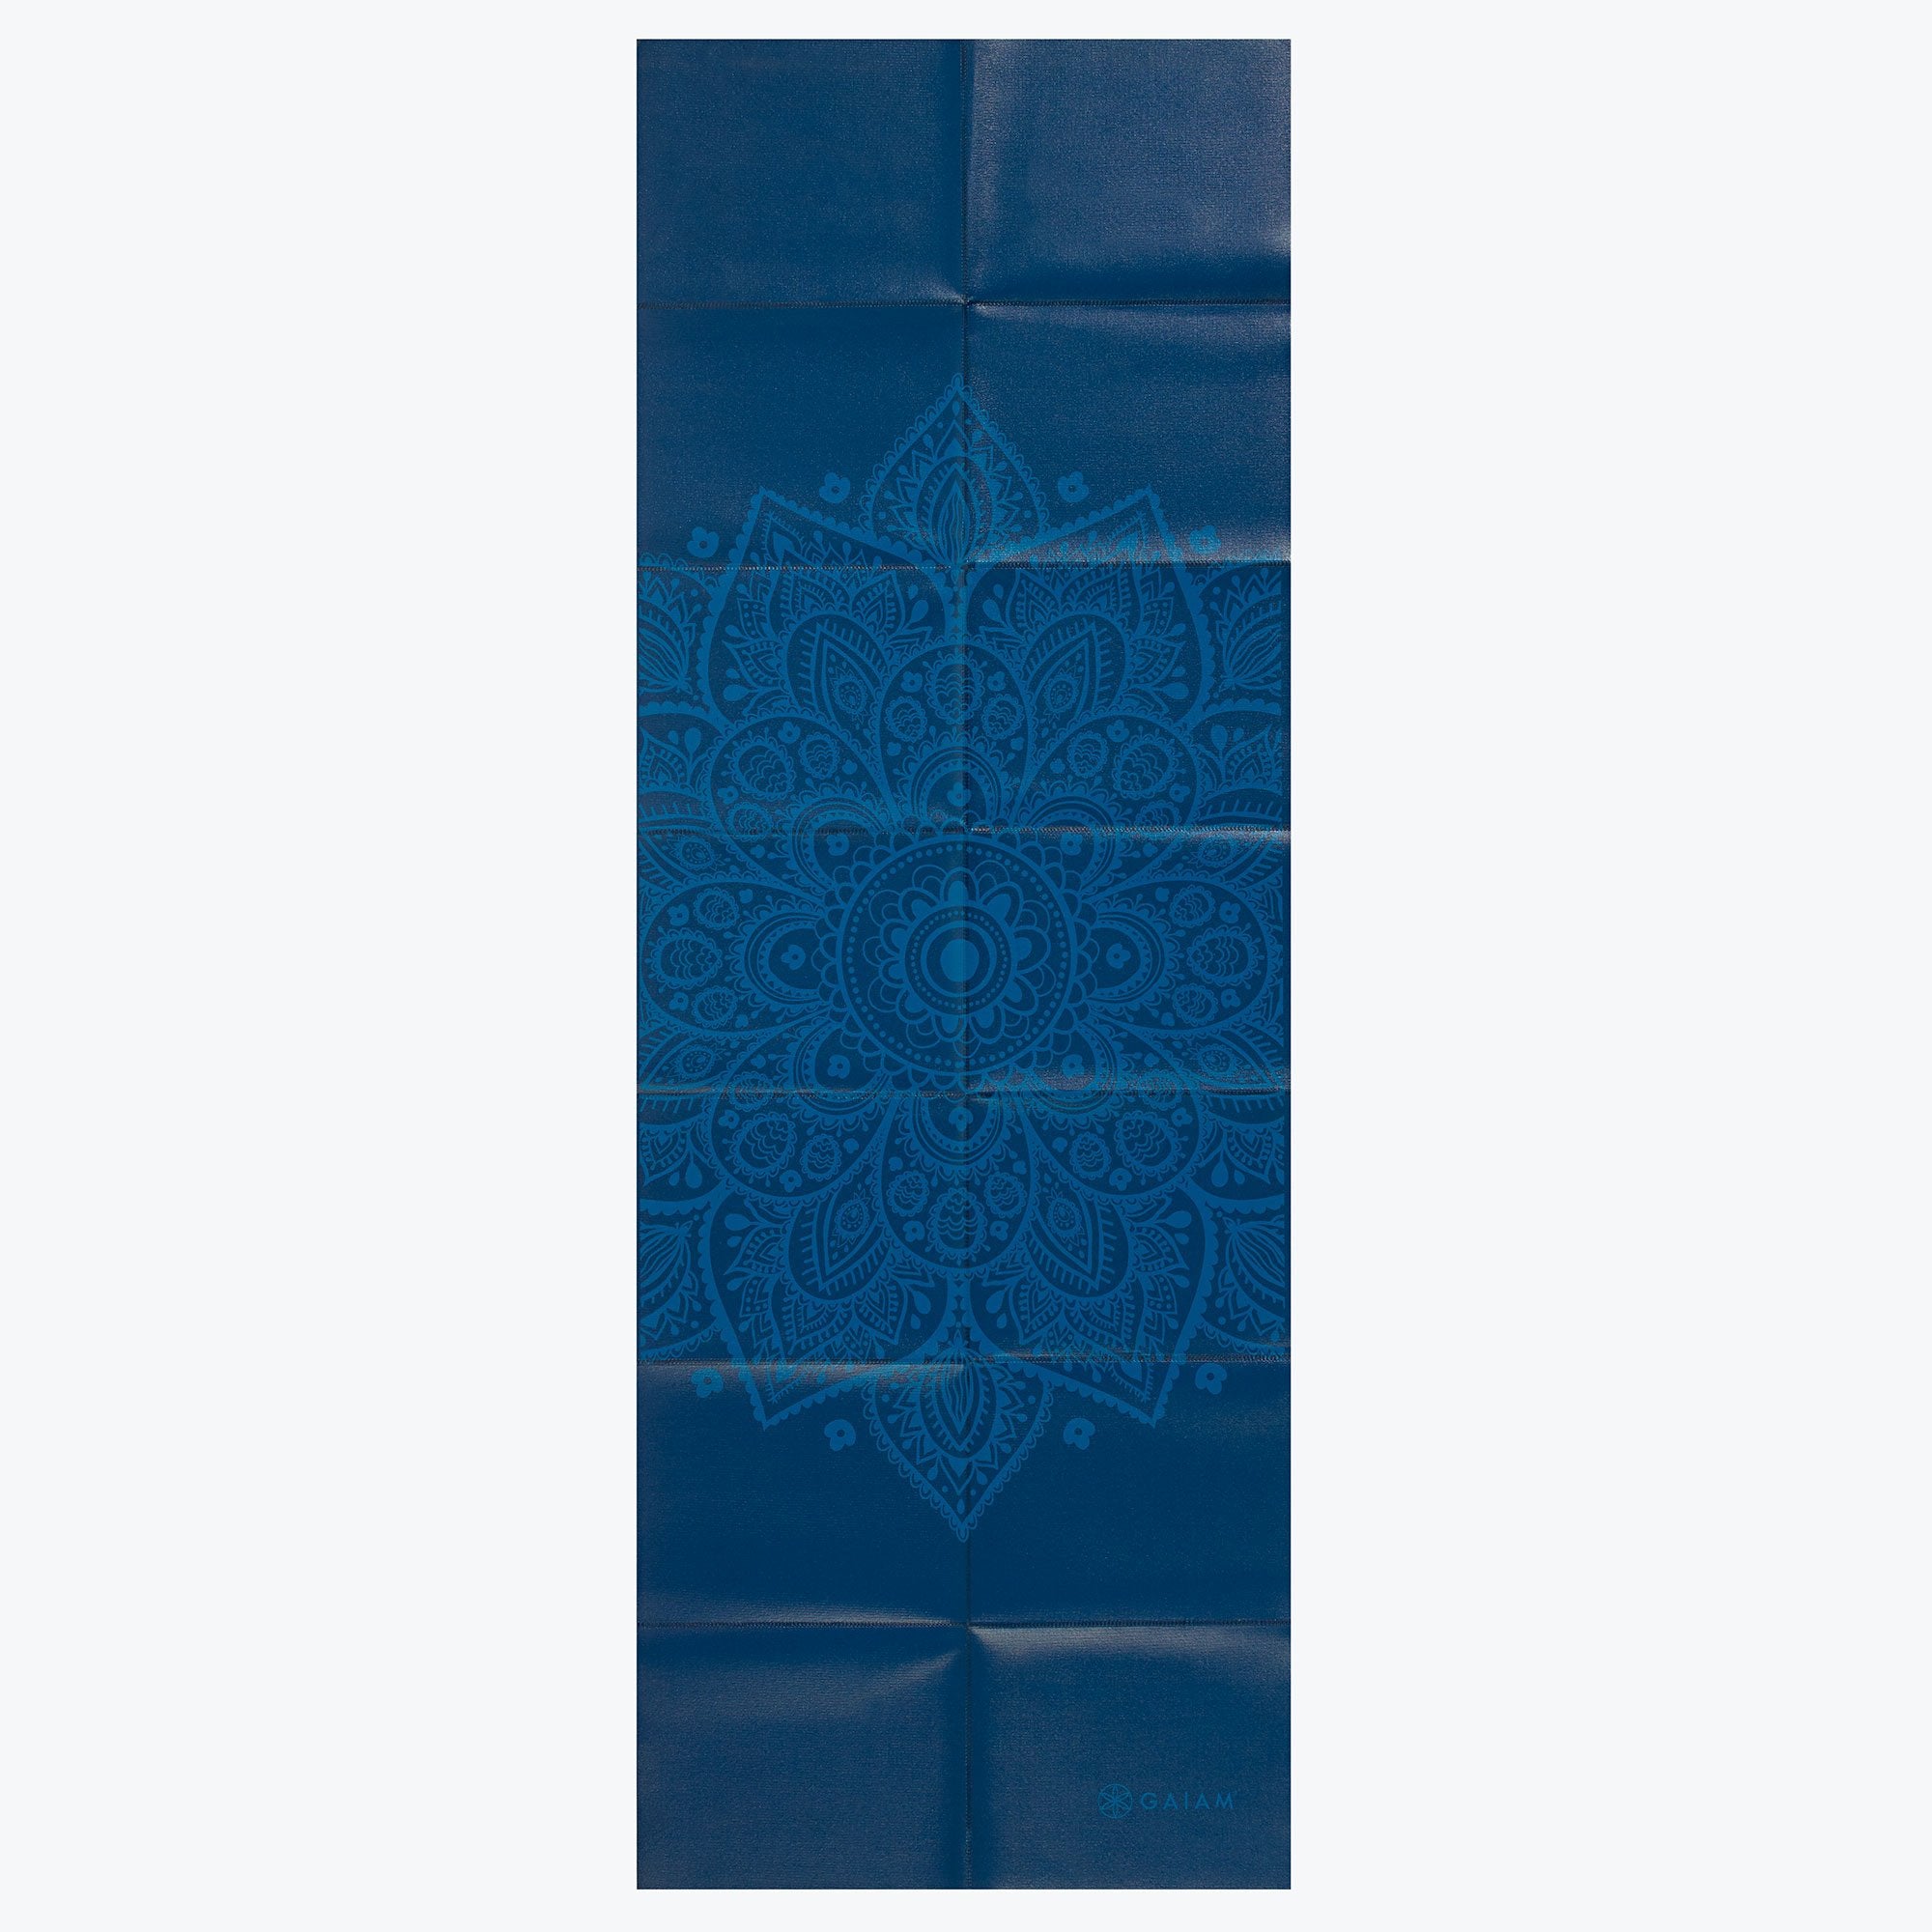 Gaiam Foldable Yoga Mat (2mm) – GetACTV